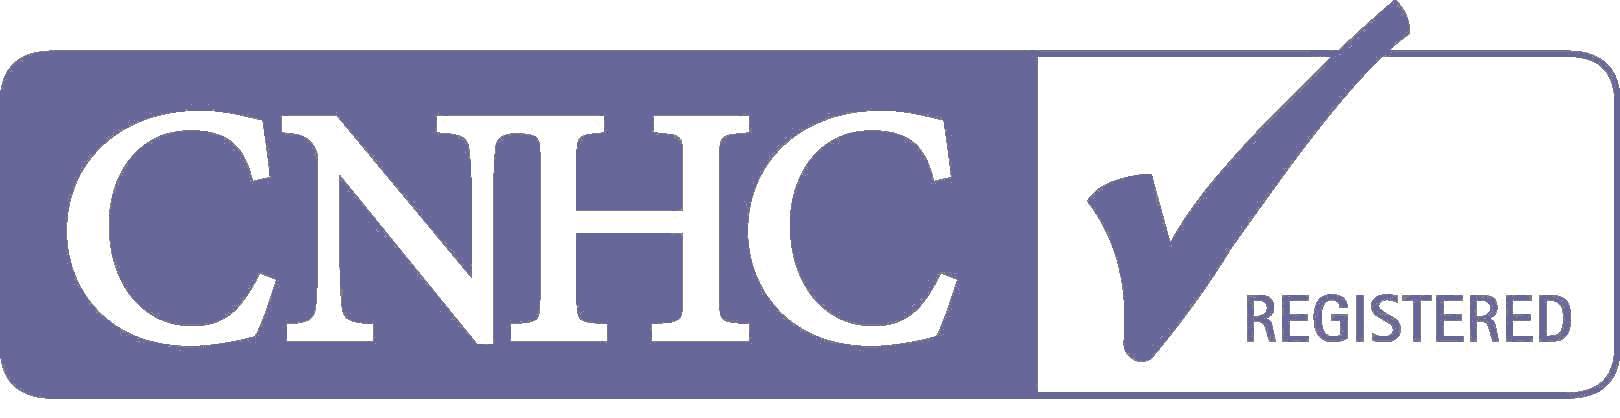 CNHC Cardiff Officially Registered for Shiatsu facial massage